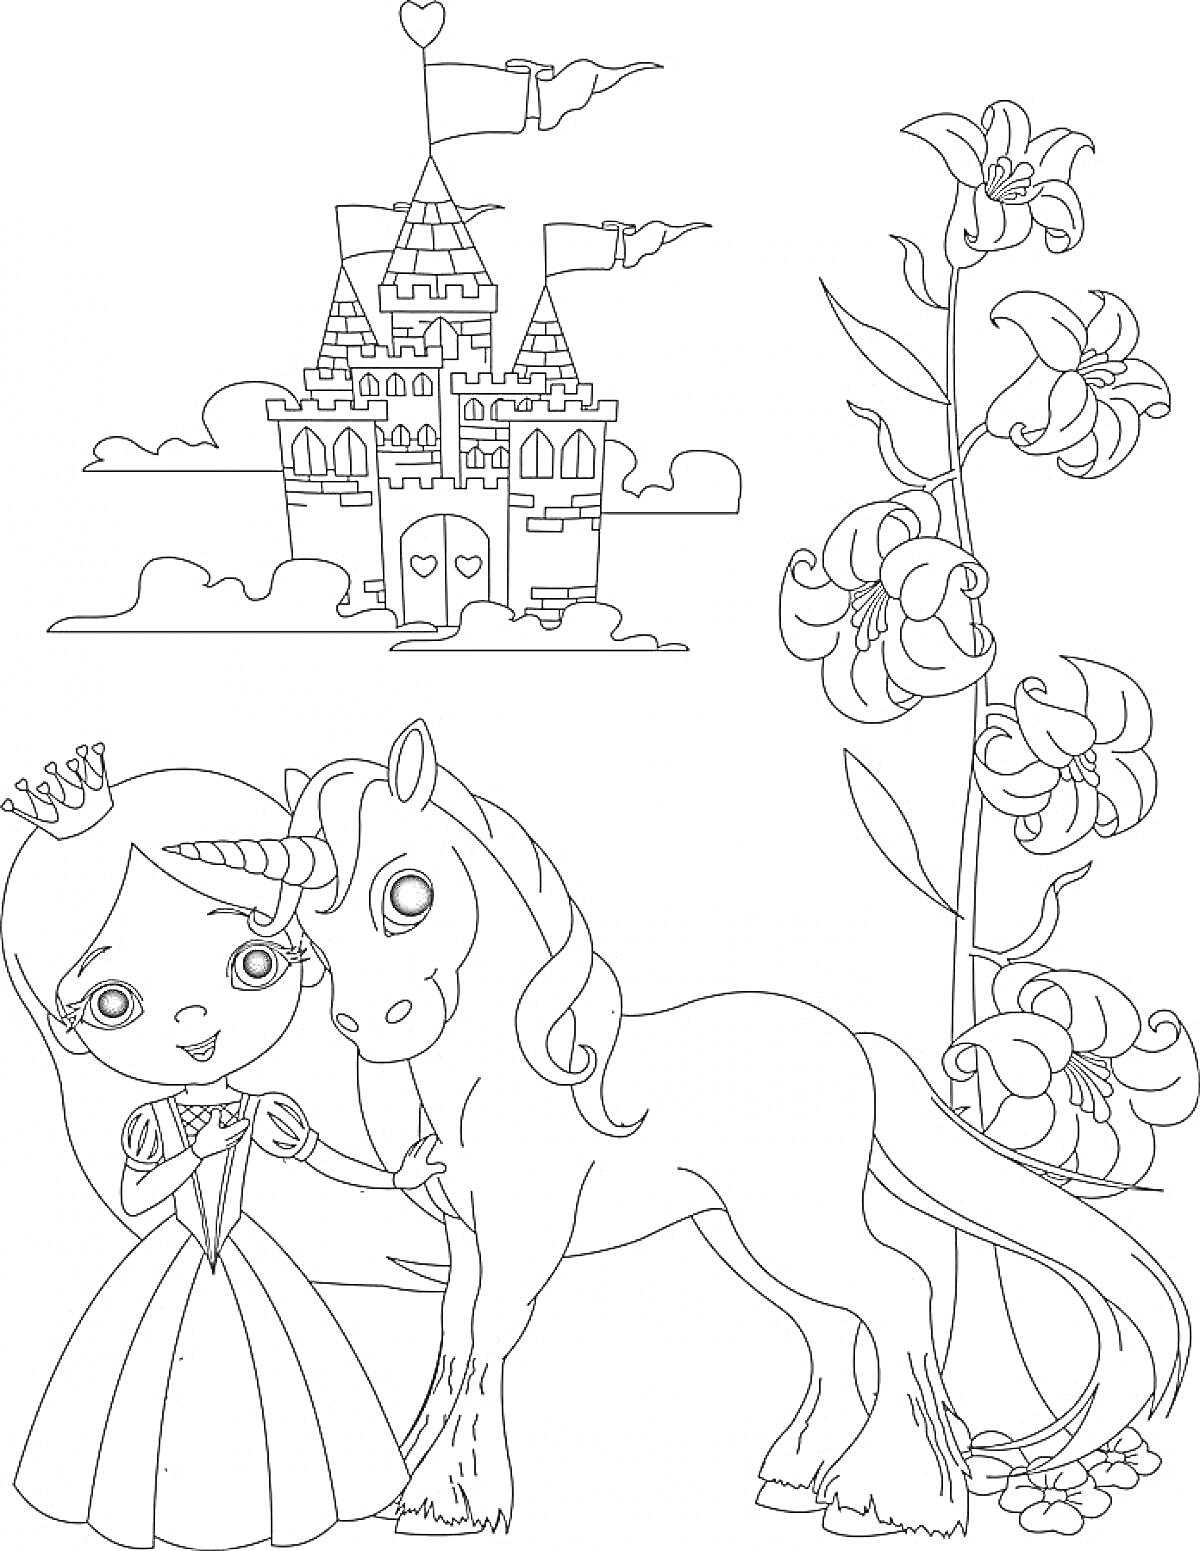 Раскраска Принцесса с Единорогом возле Замка и Цветов